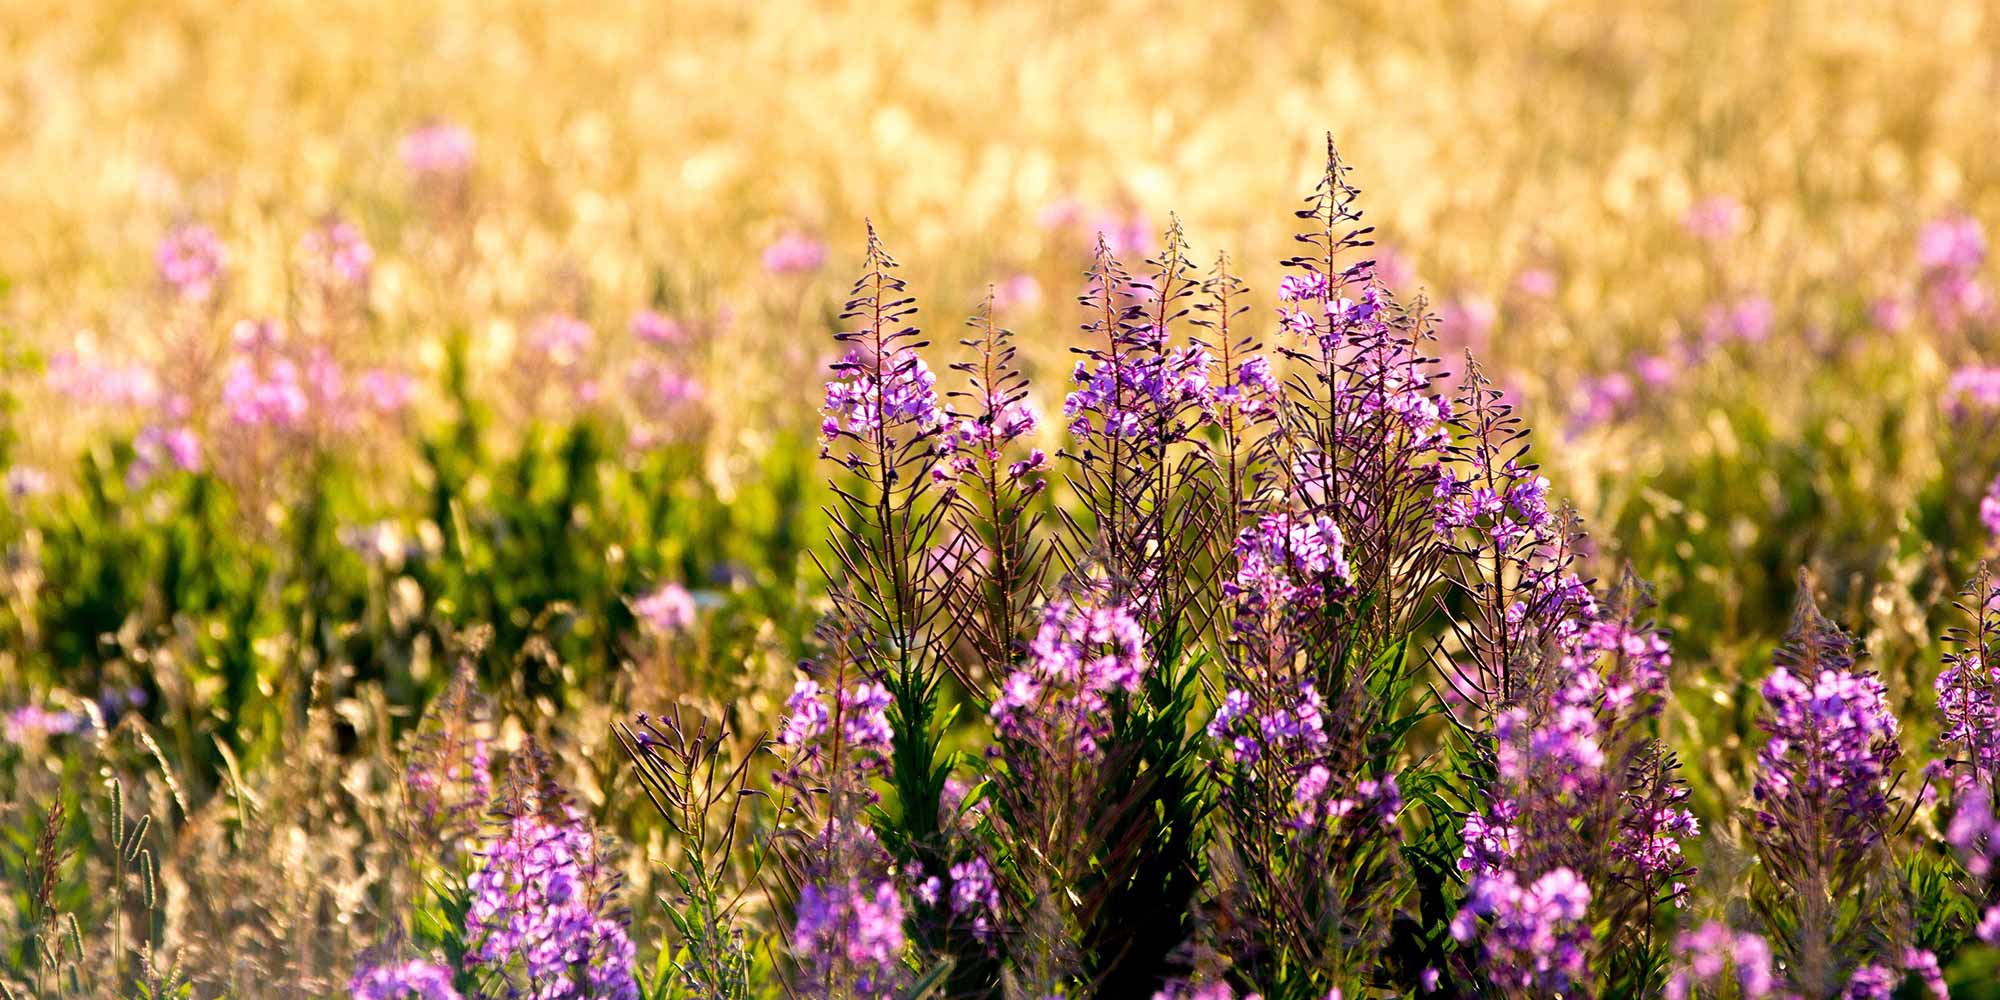 A field full of purple wildflowers in Waterton